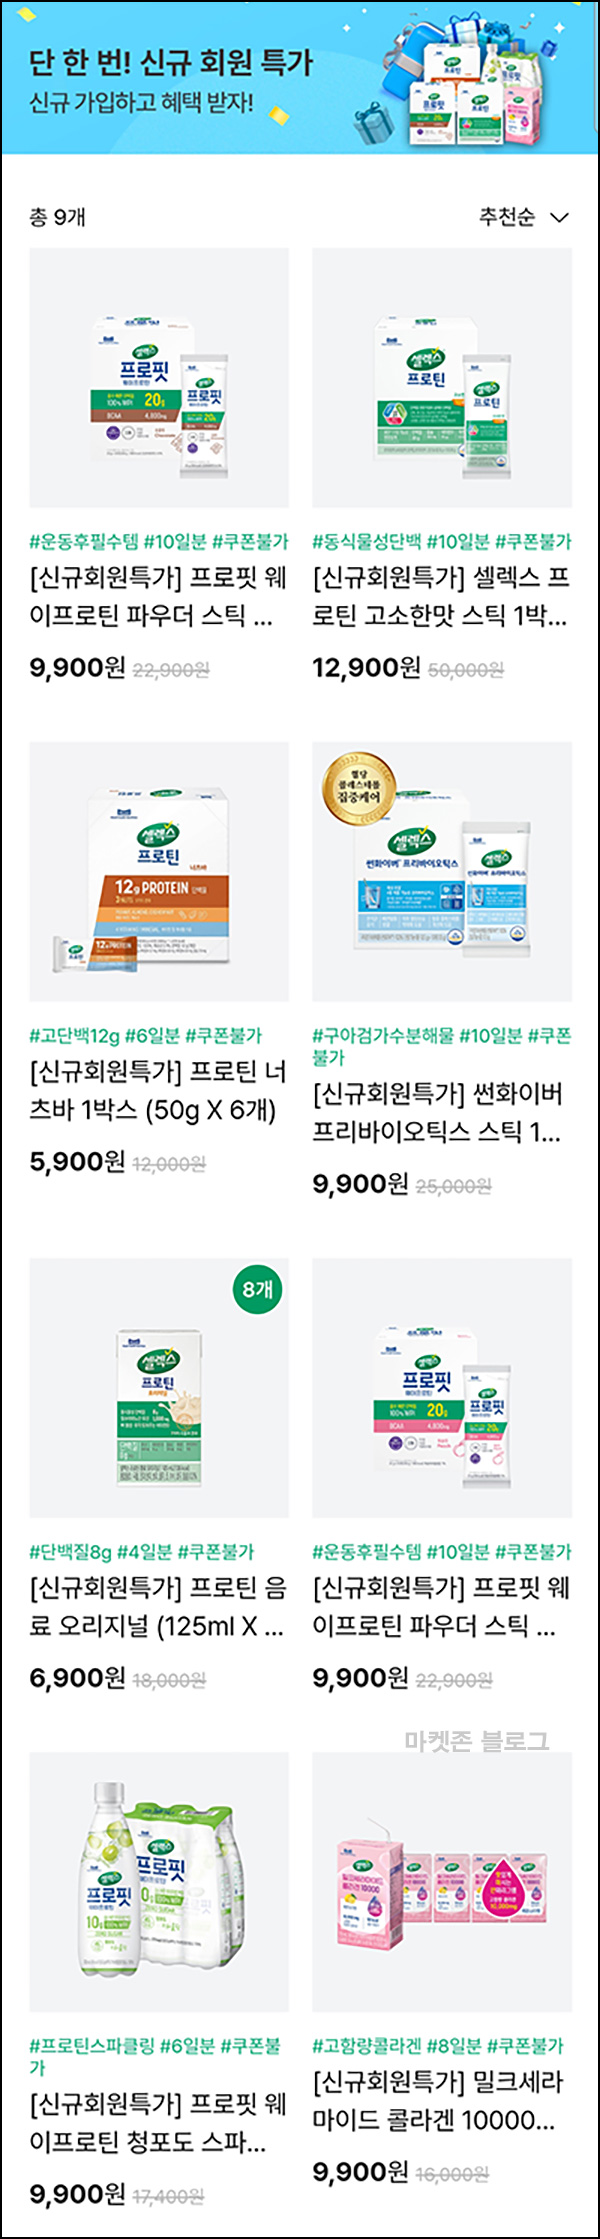 셀렉스몰 첫구매 특가 추천인이벤트(적립금 15,000원~)전원~03.31